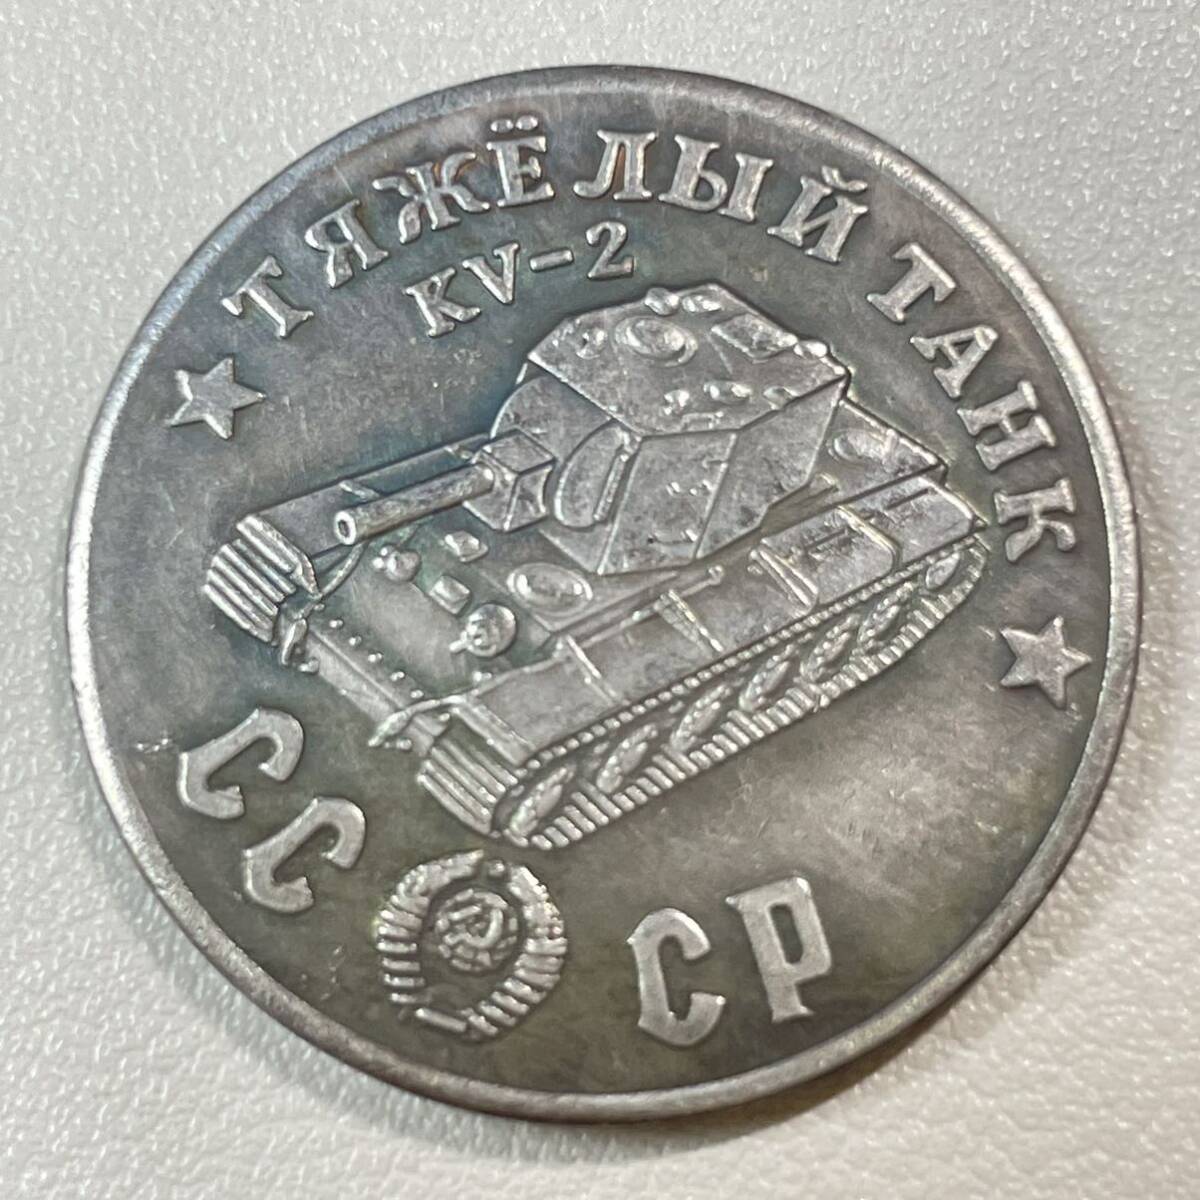 ロシア 硬貨 古銭 ソビエト連邦 戦車 記念幣 KV-2 クレムリン宮殿 コレクション コイン 重13.26g_画像1